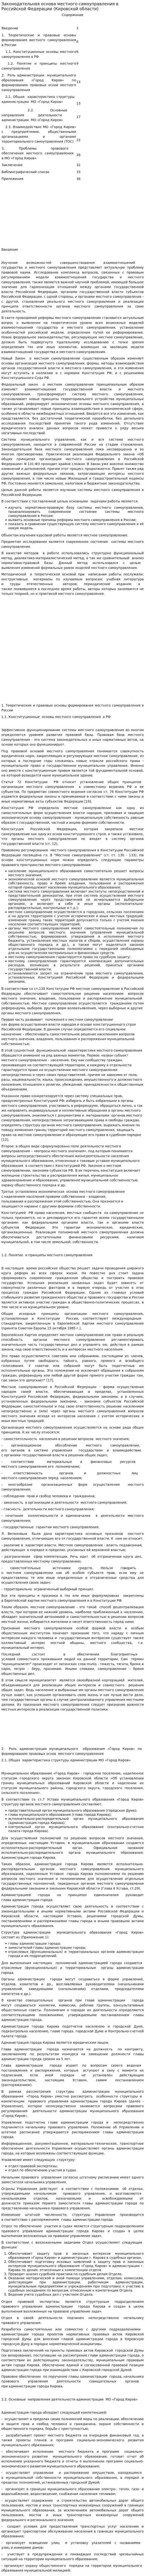 Законодательная основа местного самоуправления в Российской Федерации (Кировской области)